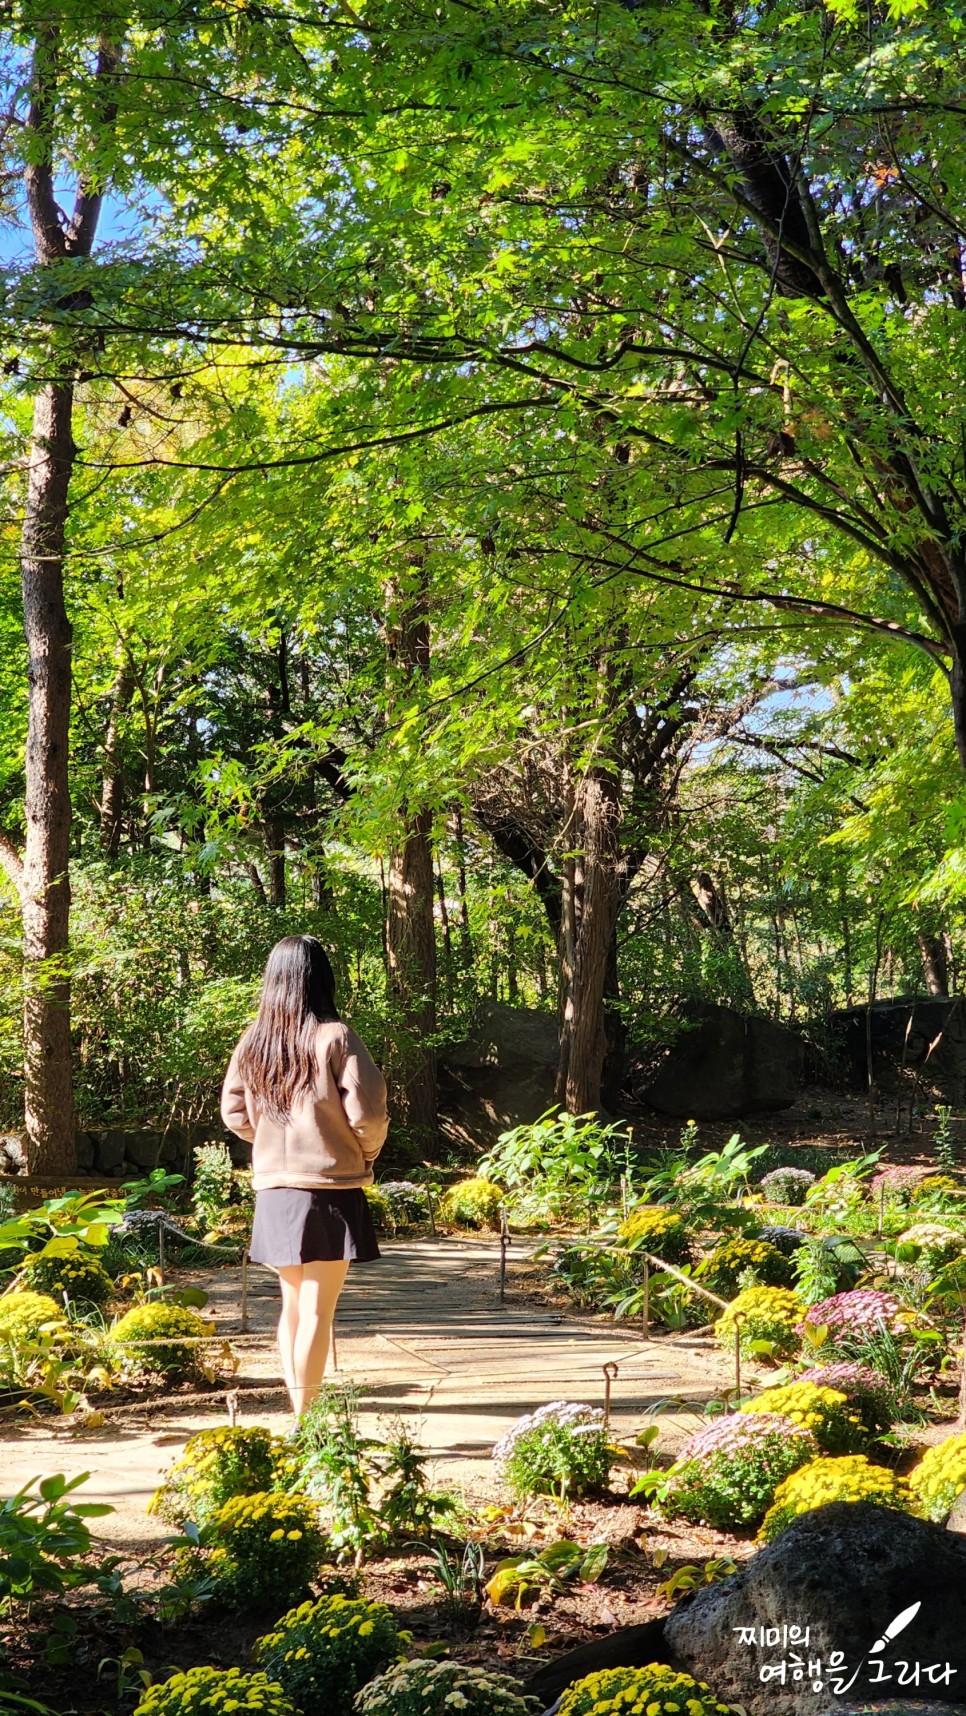 파주 벽초지수목원 가을꽃 국화축제 경기도 식물원 데이트 나들이 볼거리